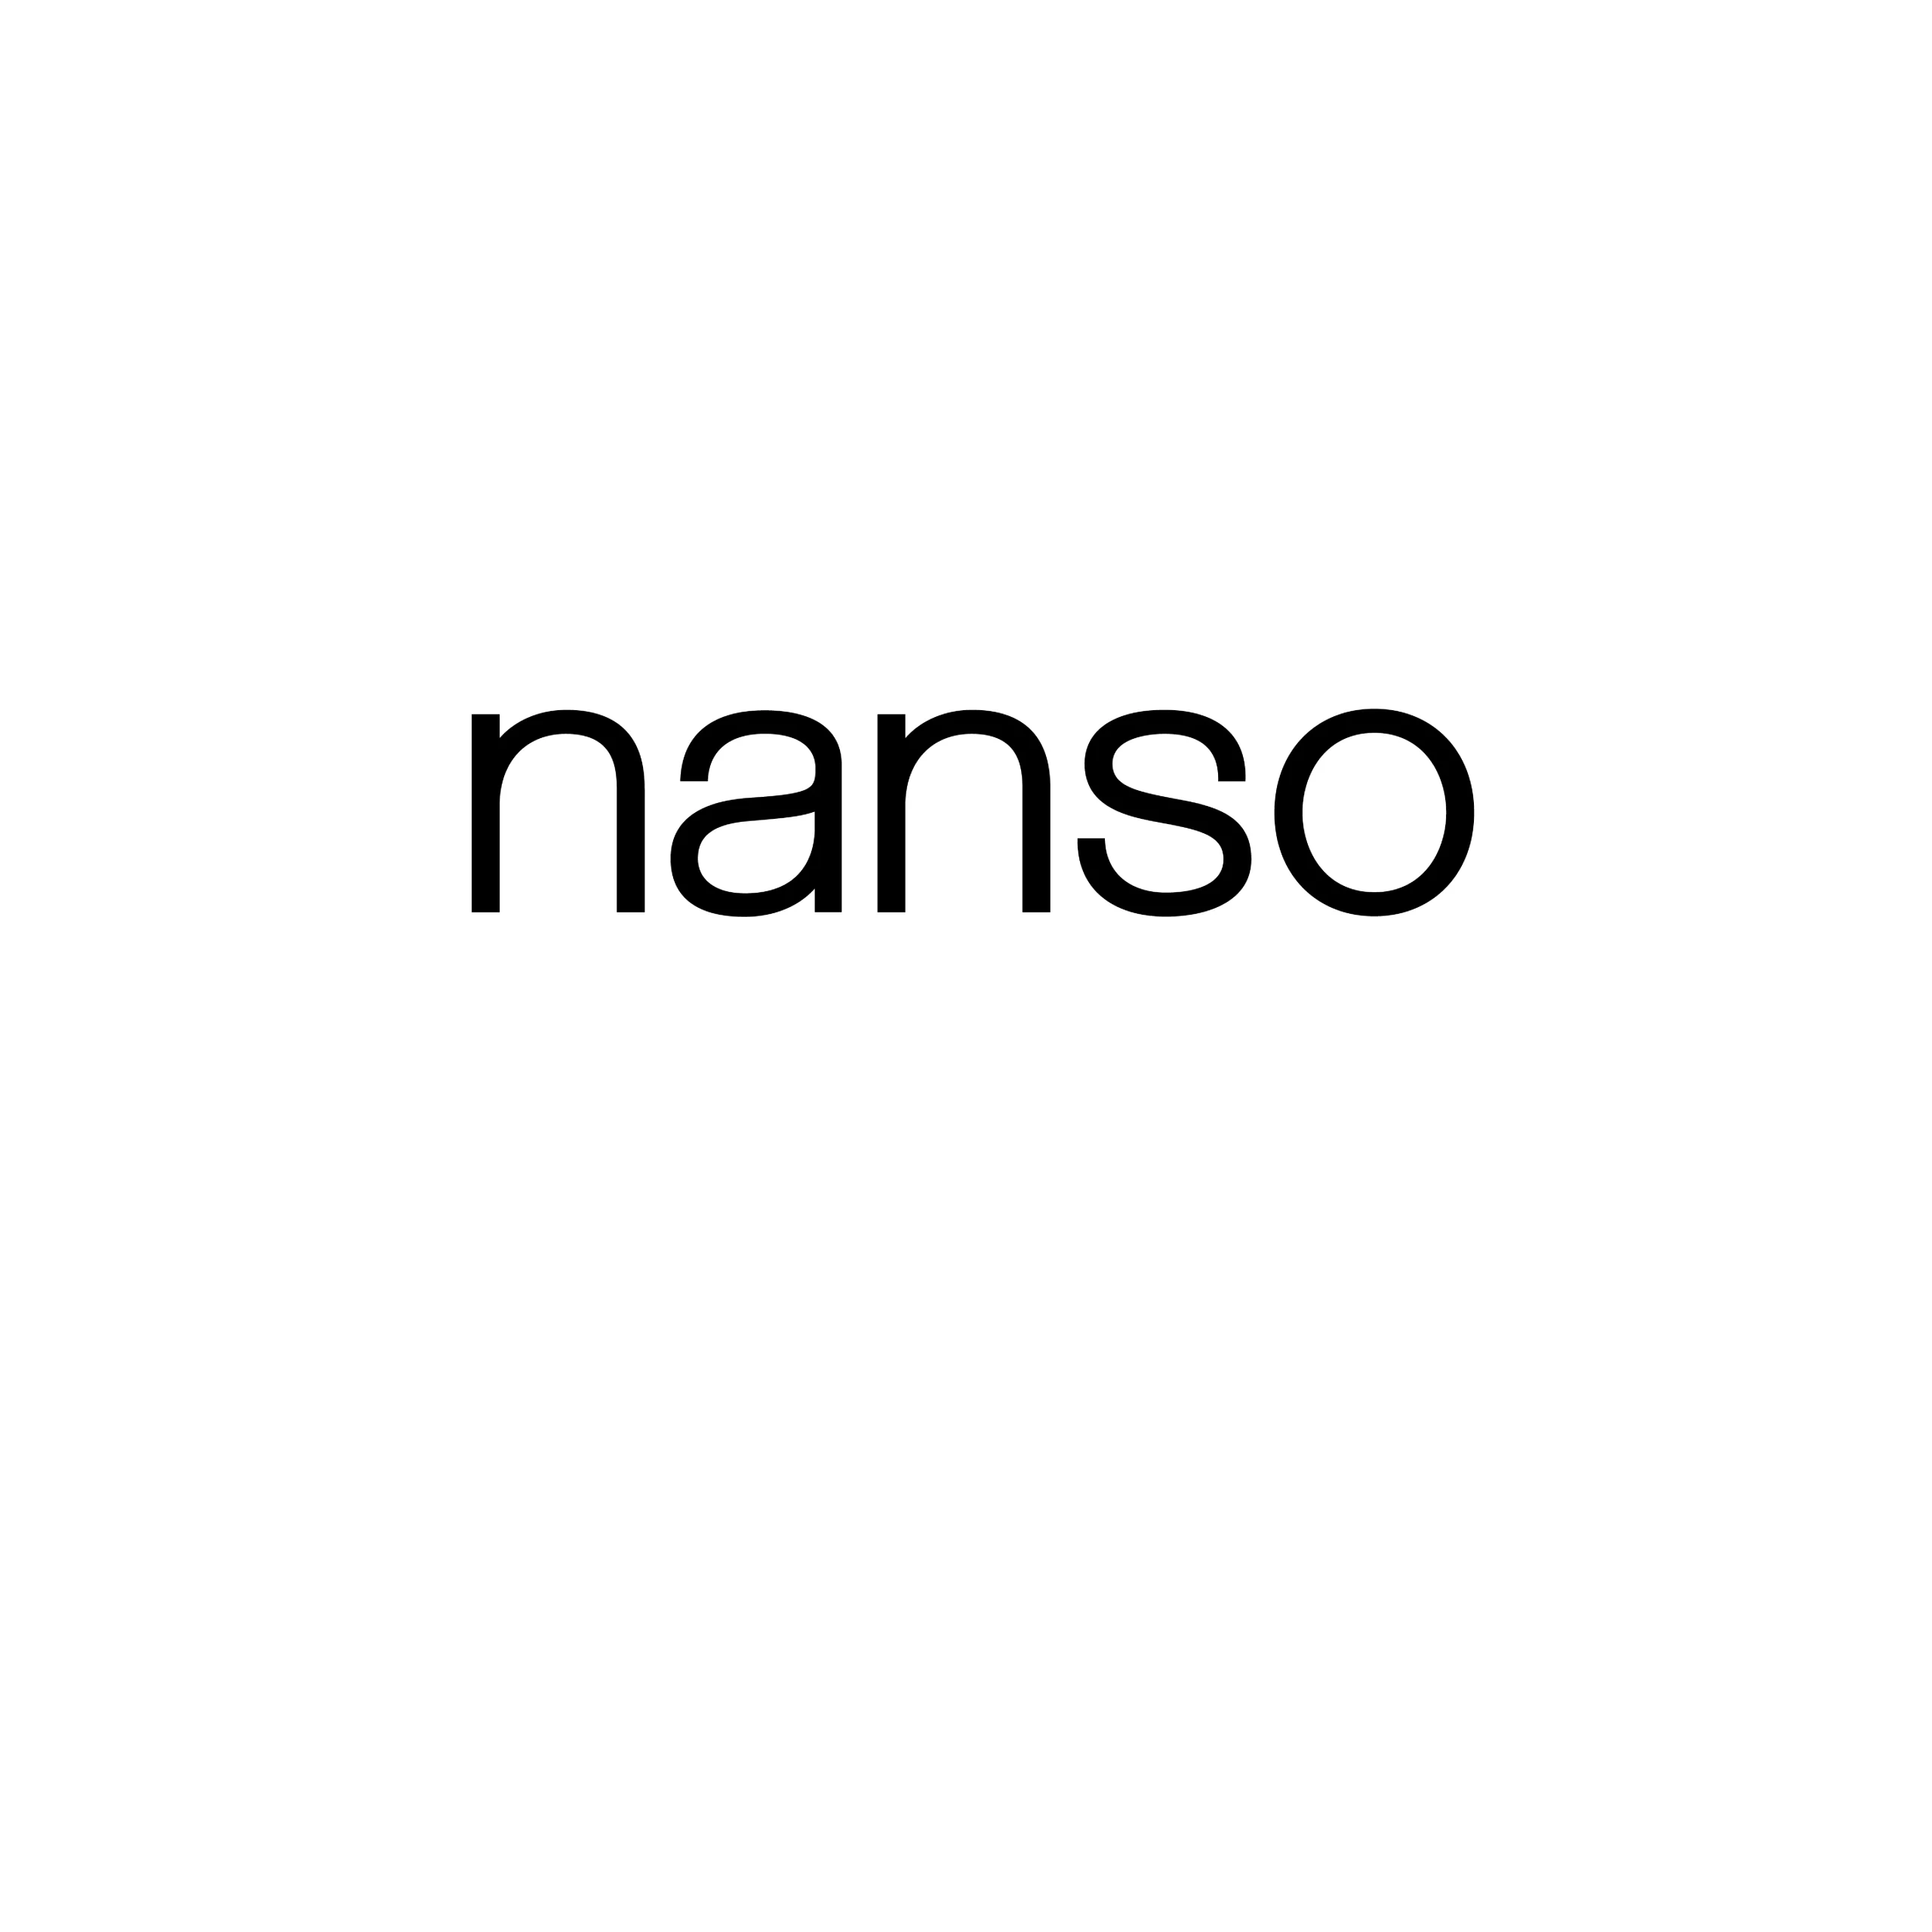 Nanso